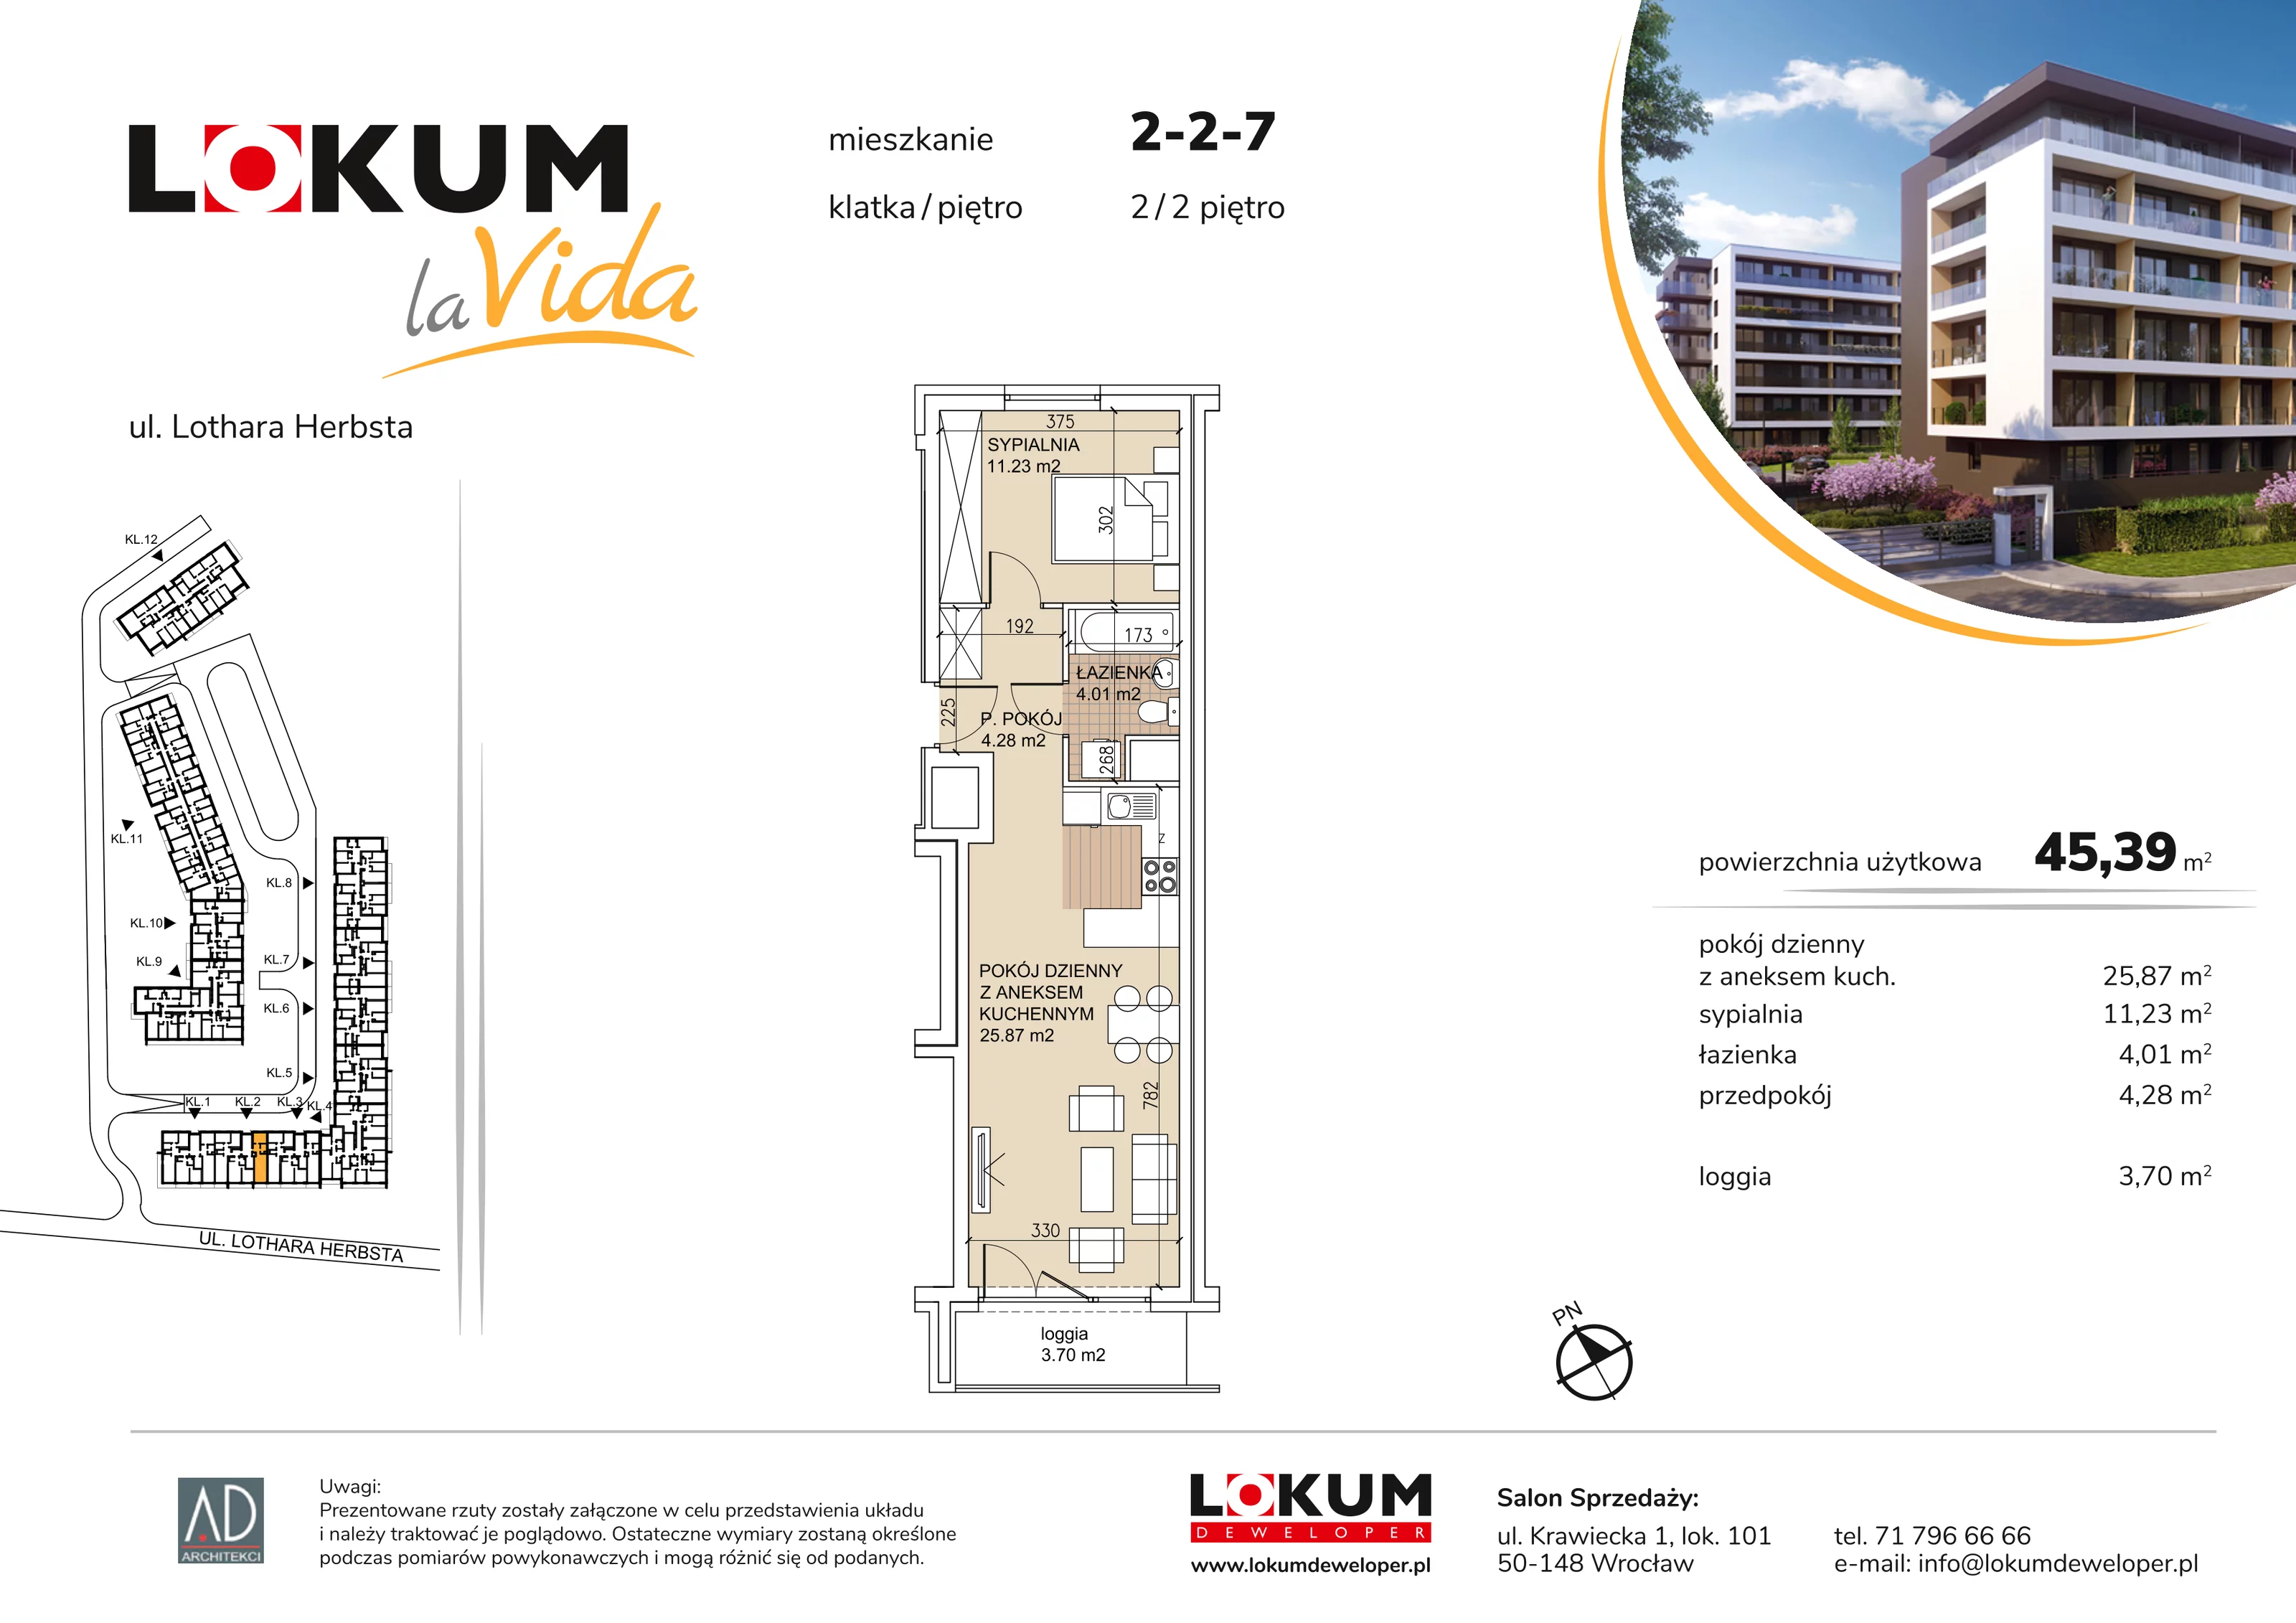 Mieszkanie 45,39 m², piętro 2, oferta nr 2-2-7, Lokum la Vida, Wrocław, Sołtysowice, ul. Lothara Herbsta